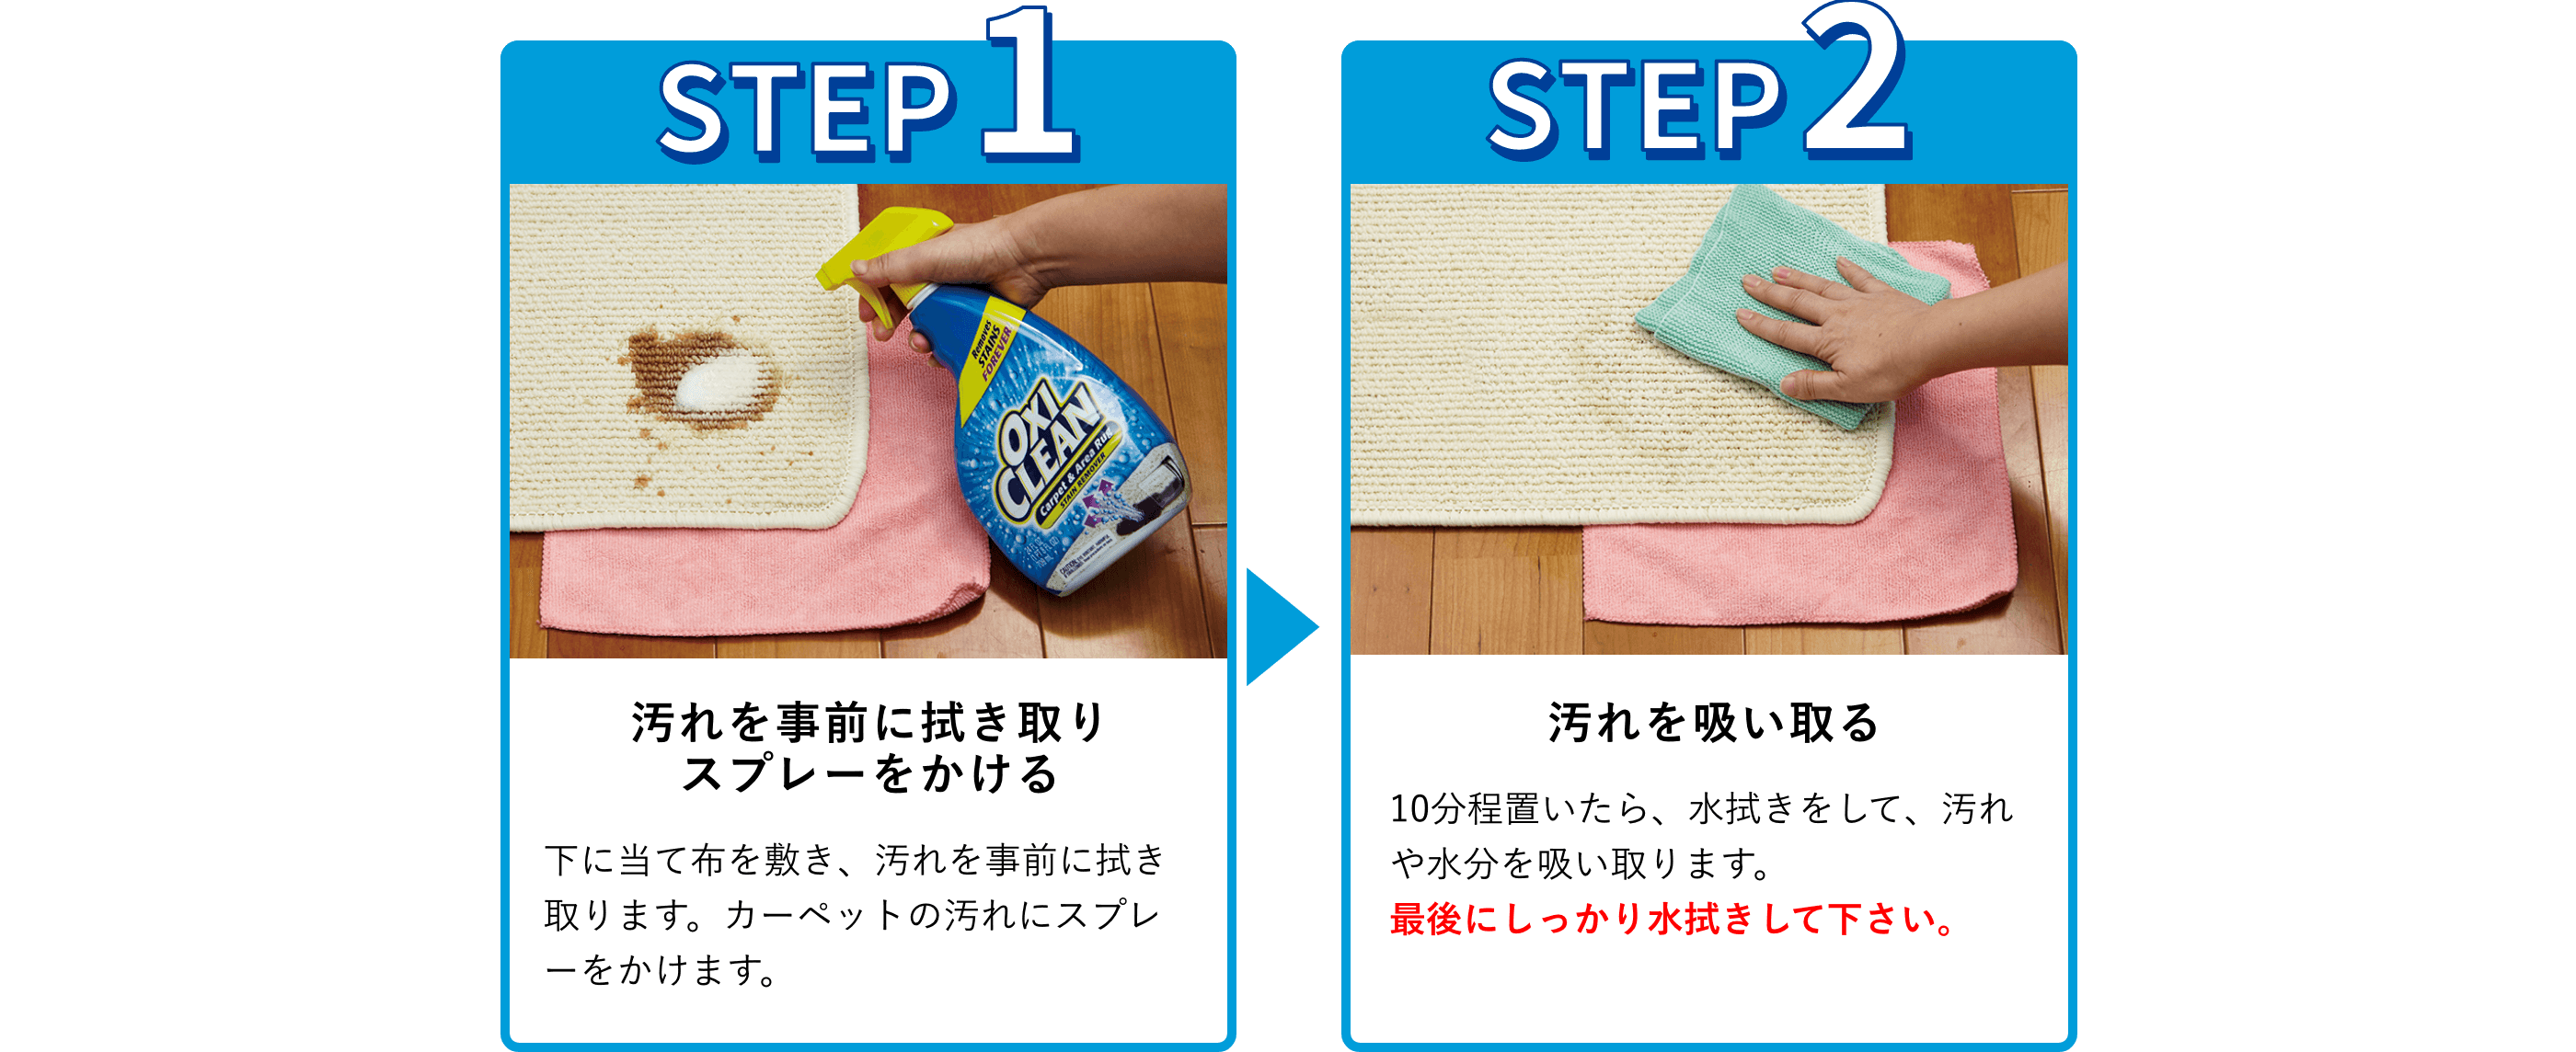 使用手順：1.汚れを事前に拭き取り
スプレーをかける。下に当て布を敷き、汚れを事前に拭き取ります。カーペットの汚れにスプレーをかけます。2.汚れを吸い取る。10分程置いたら、水拭きをして、汚れや水分を吸い取ります。最後にしっかり水拭きして下さい。
